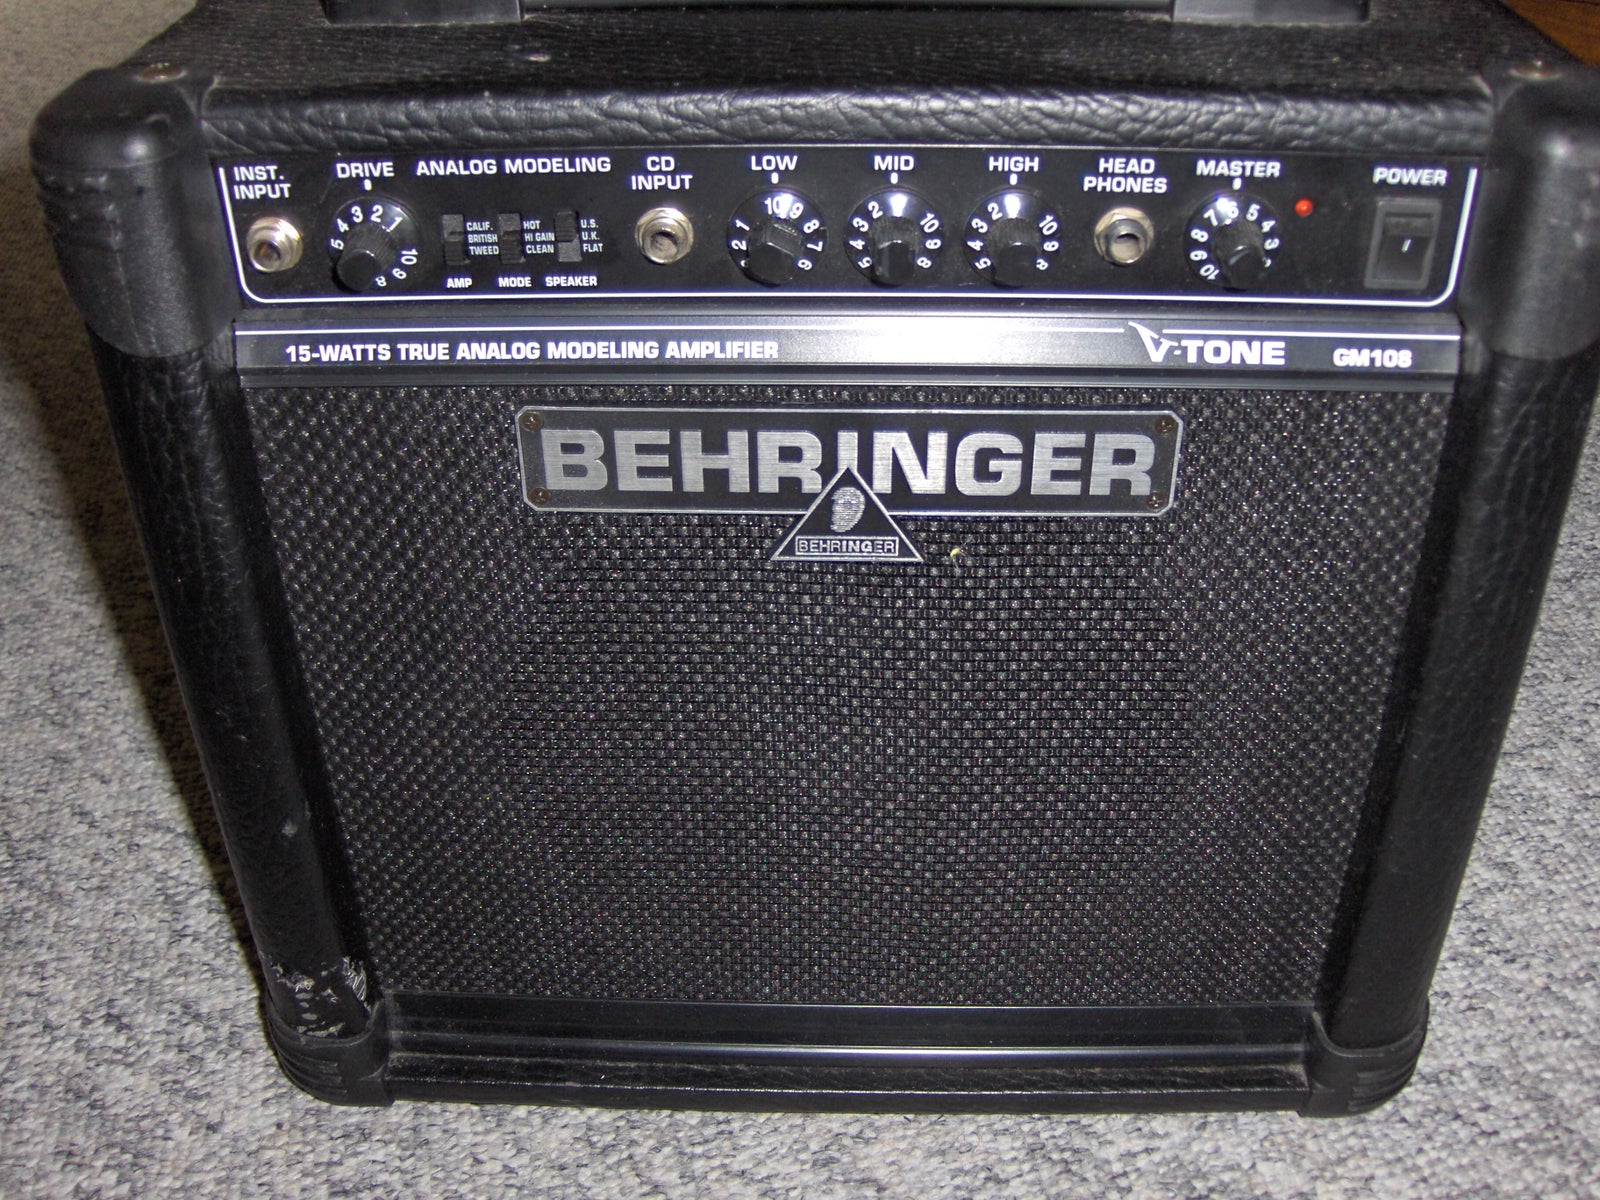 Guitarforstærker, Behringer GM108, 15 W